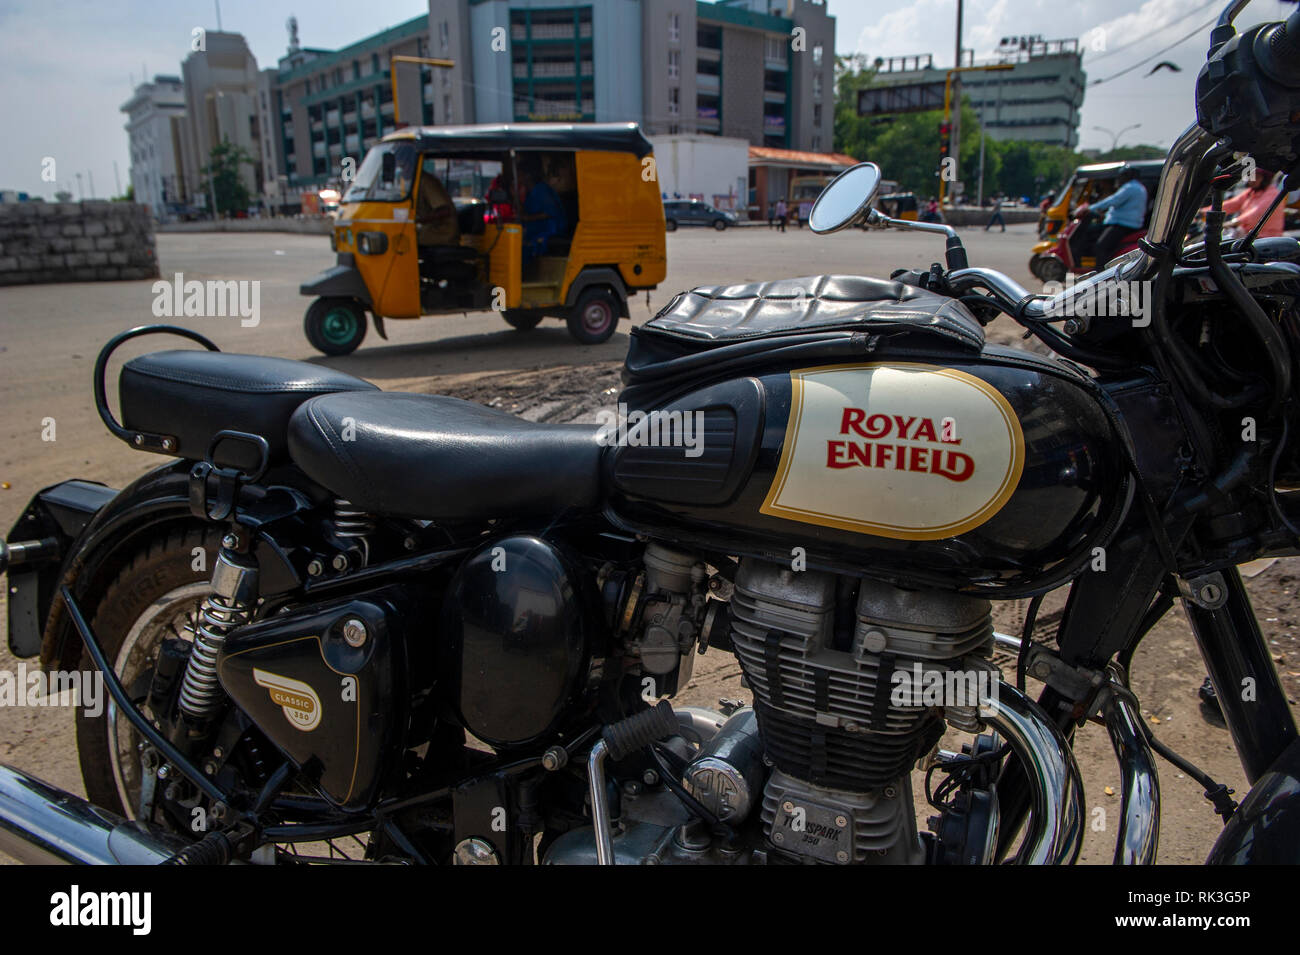 Royal Enfield moto à Chennai, Inde du Sud Banque D'Images